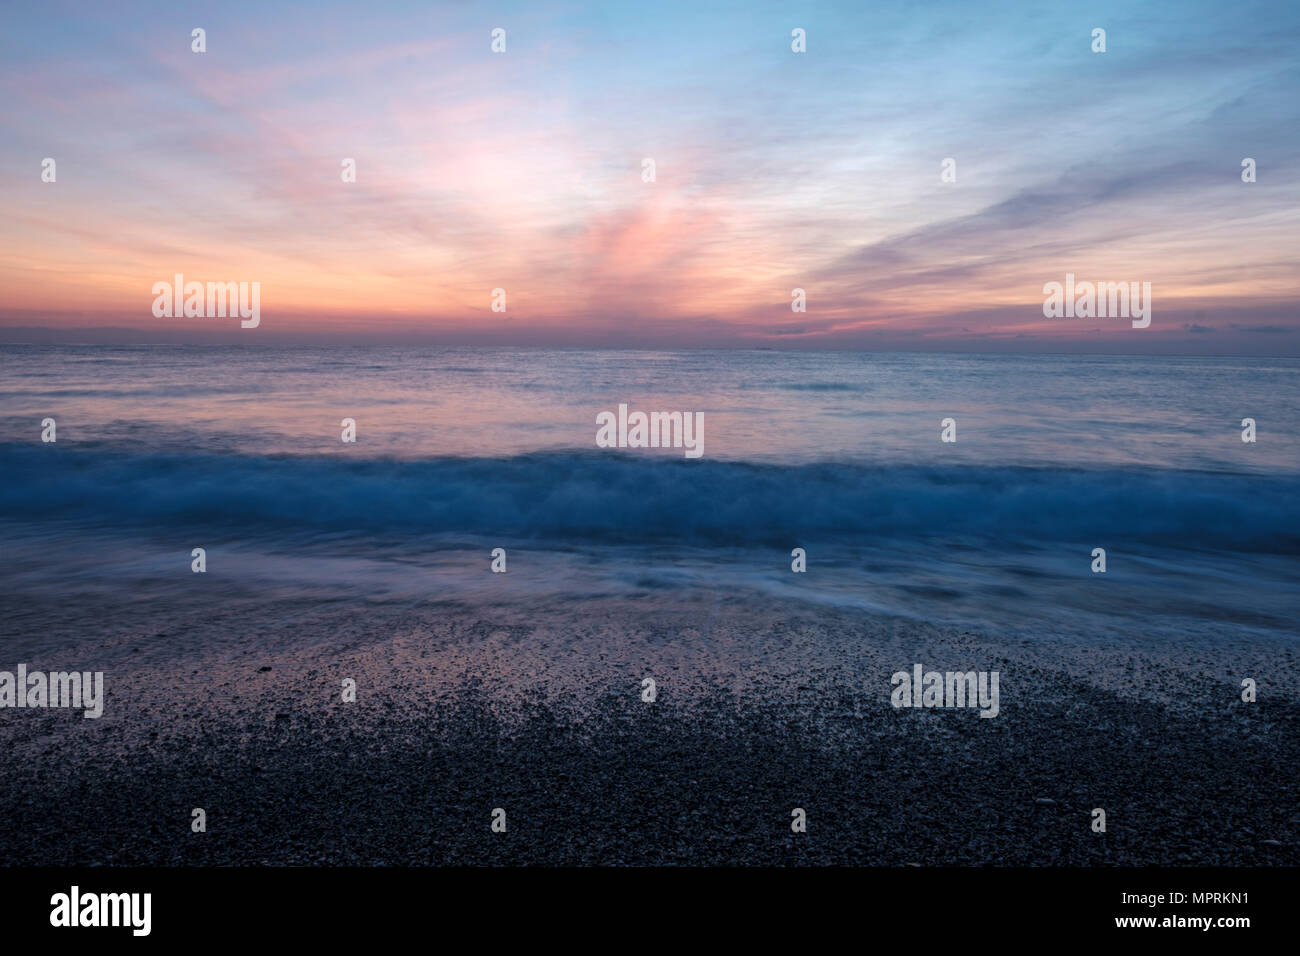 Italy, Liguria, Riviera di Ponente, Gulf of Genoa, Noli, sunrise at beach Stock Photo